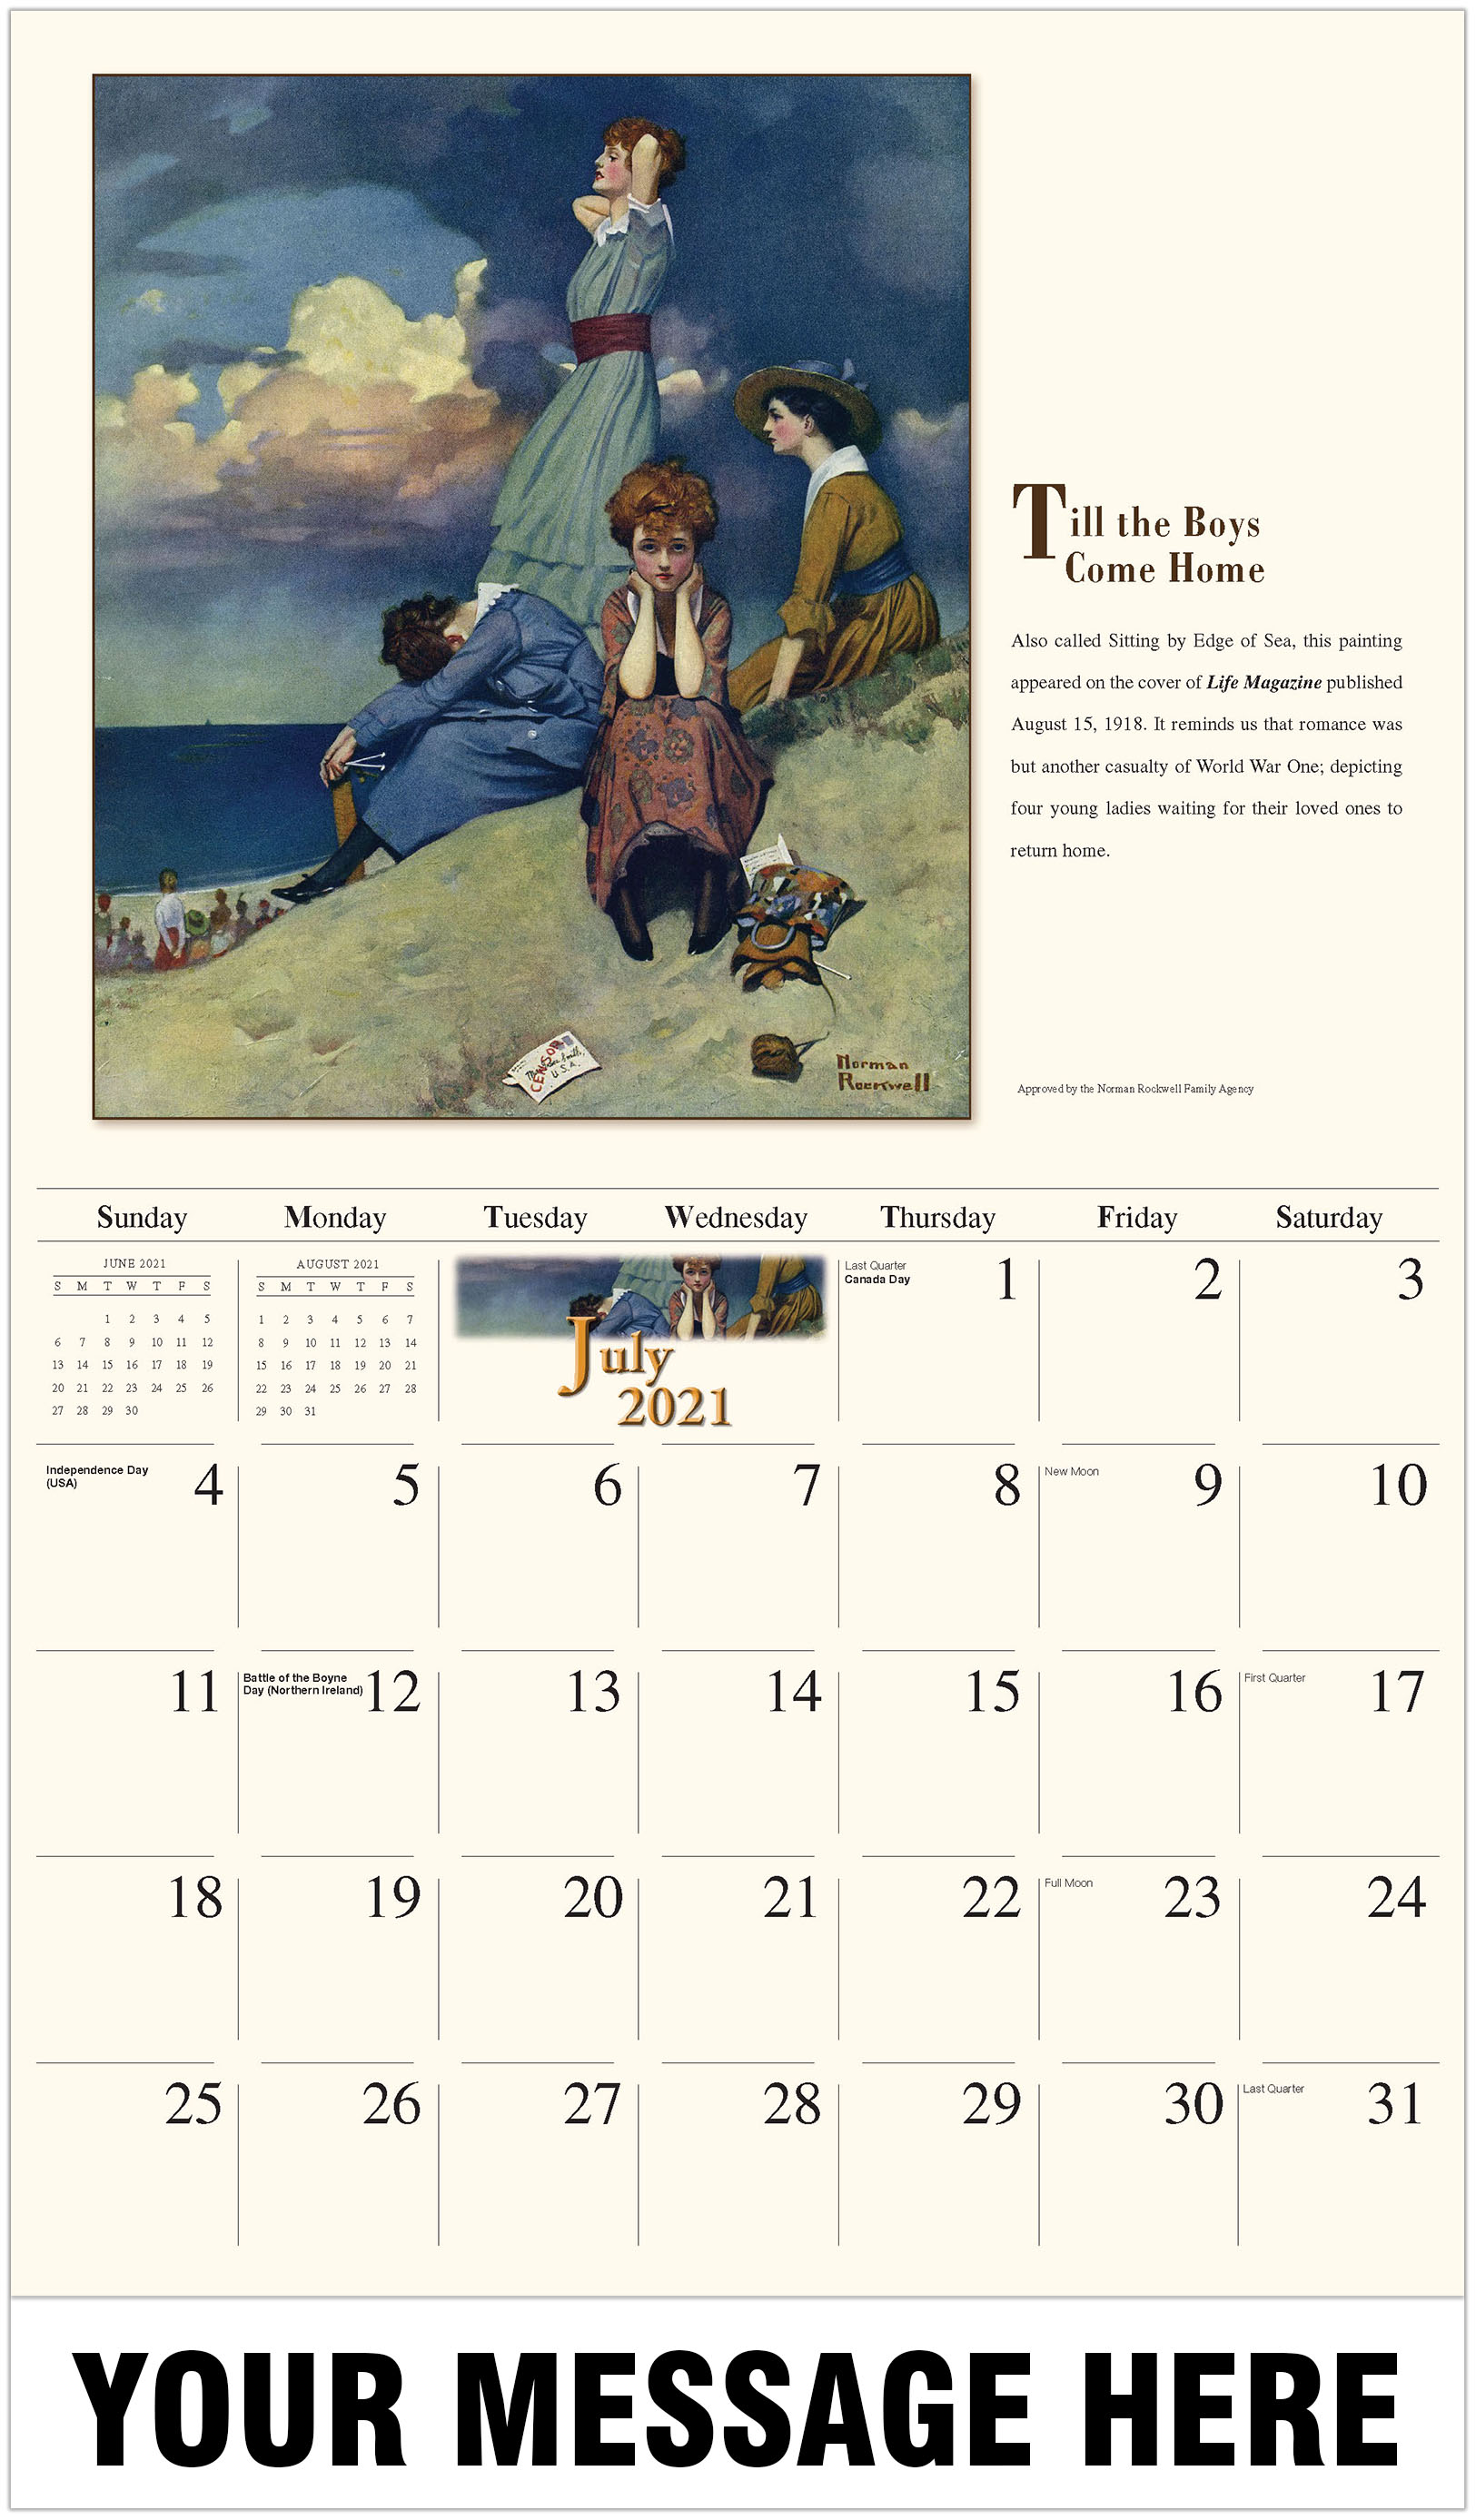 norman rockwell calendar 2021 Norman Rockwell Art Promotional Calendar 2021 Business Promotional Calendar norman rockwell calendar 2021